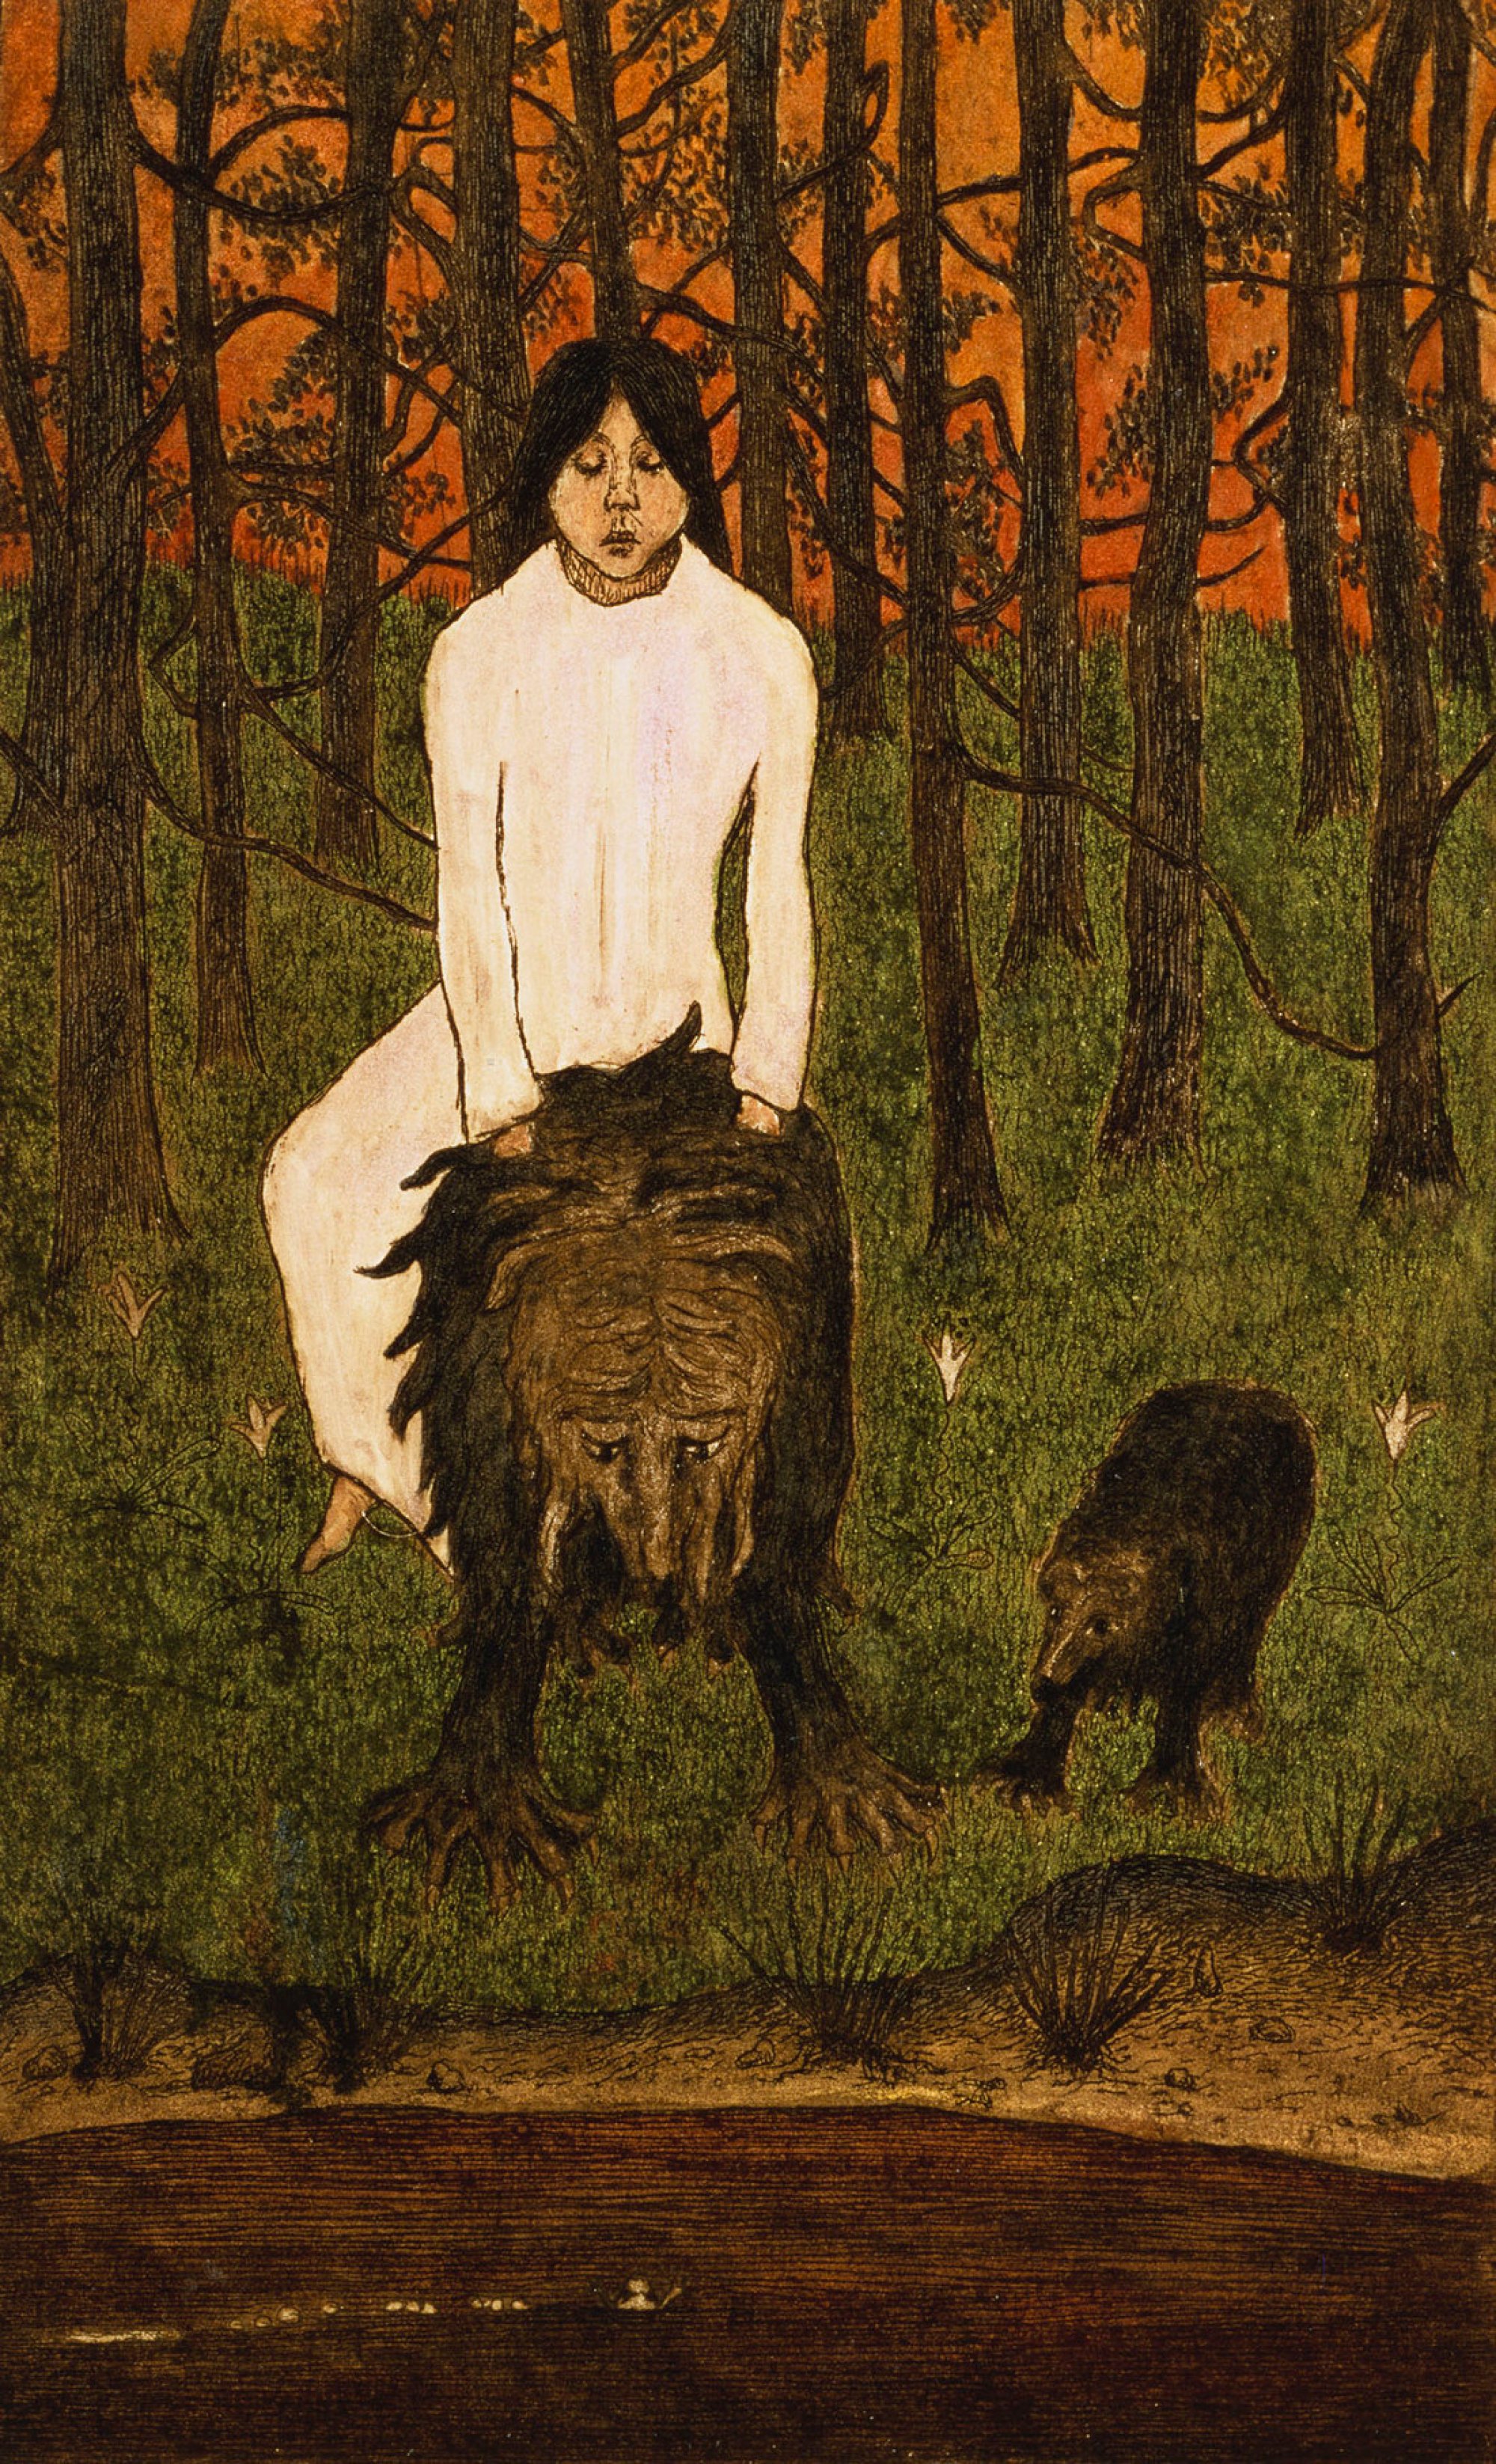 おとぎ話 by Hugo Simberg - 1898年 - 21 x 13 cm 